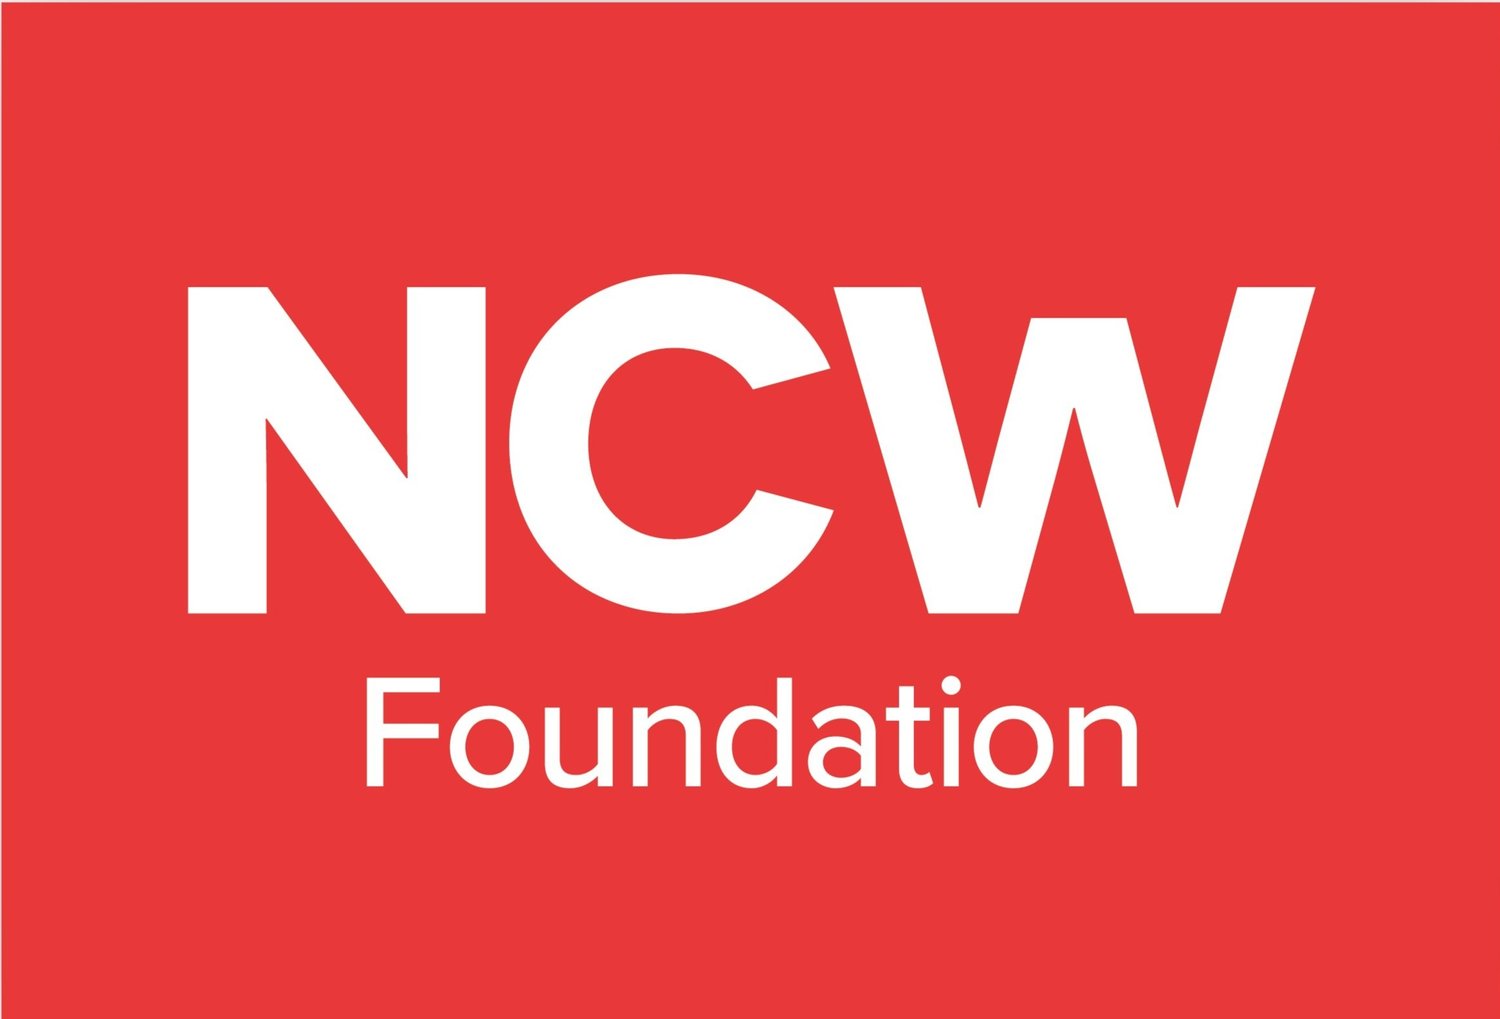 NCW Foundation